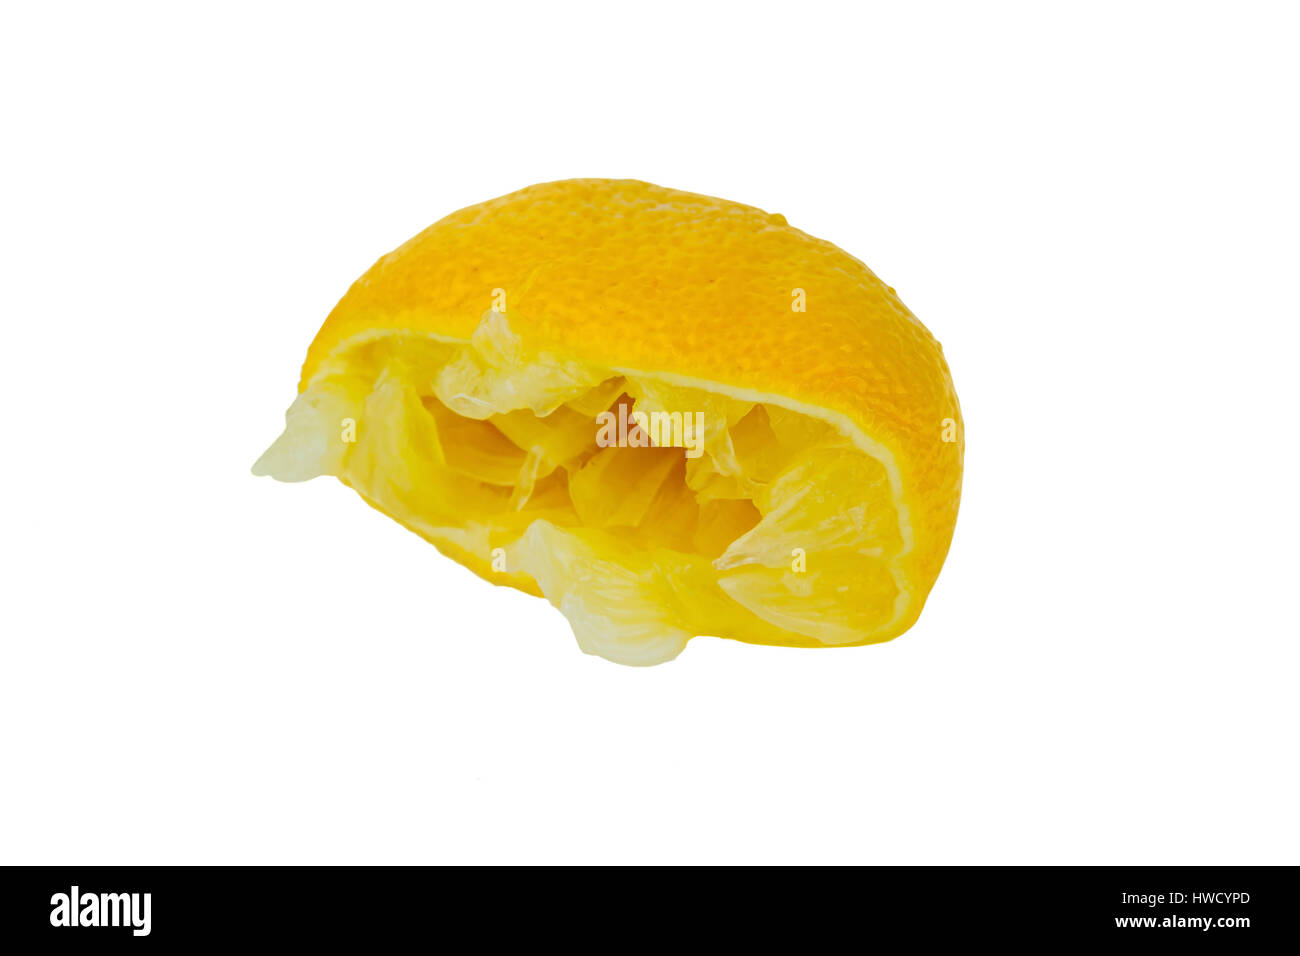 Un jus de citron sur fond blanc. Photo symbolique pour les taxes et livraisons., ausgepresste weißemHintergrund auf eine Zitrone. Symbolfoto für Steuer Banque D'Images